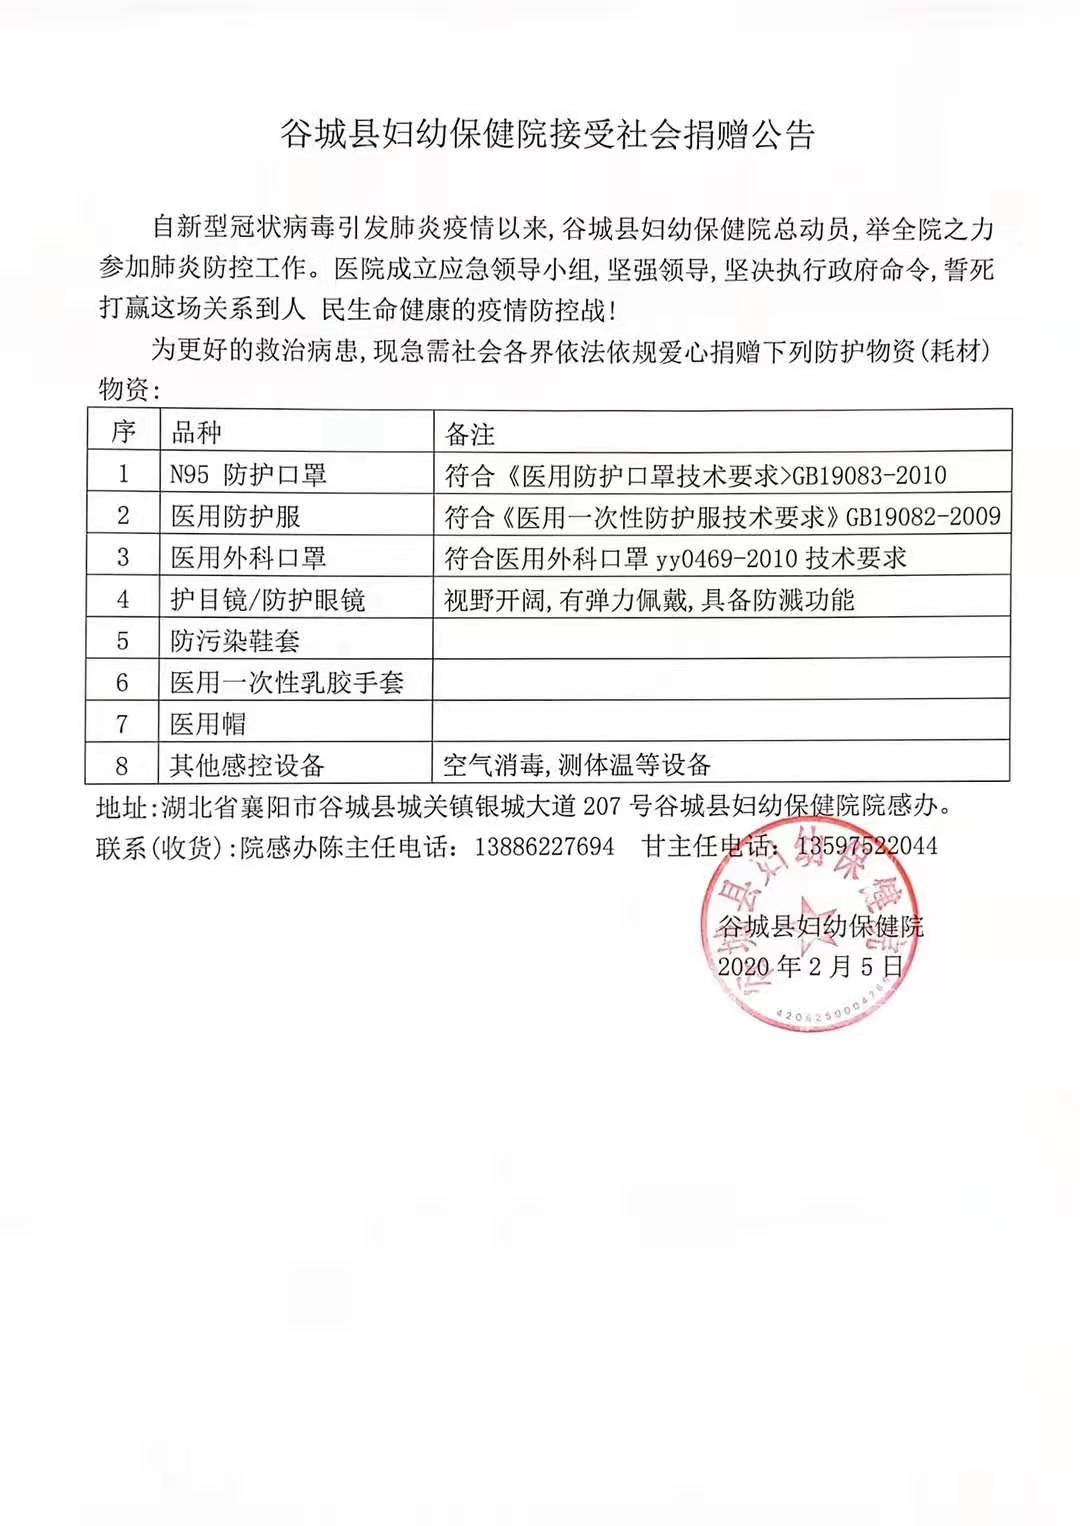 27谷城县妇幼保健院接受社会捐赠公告.jpg